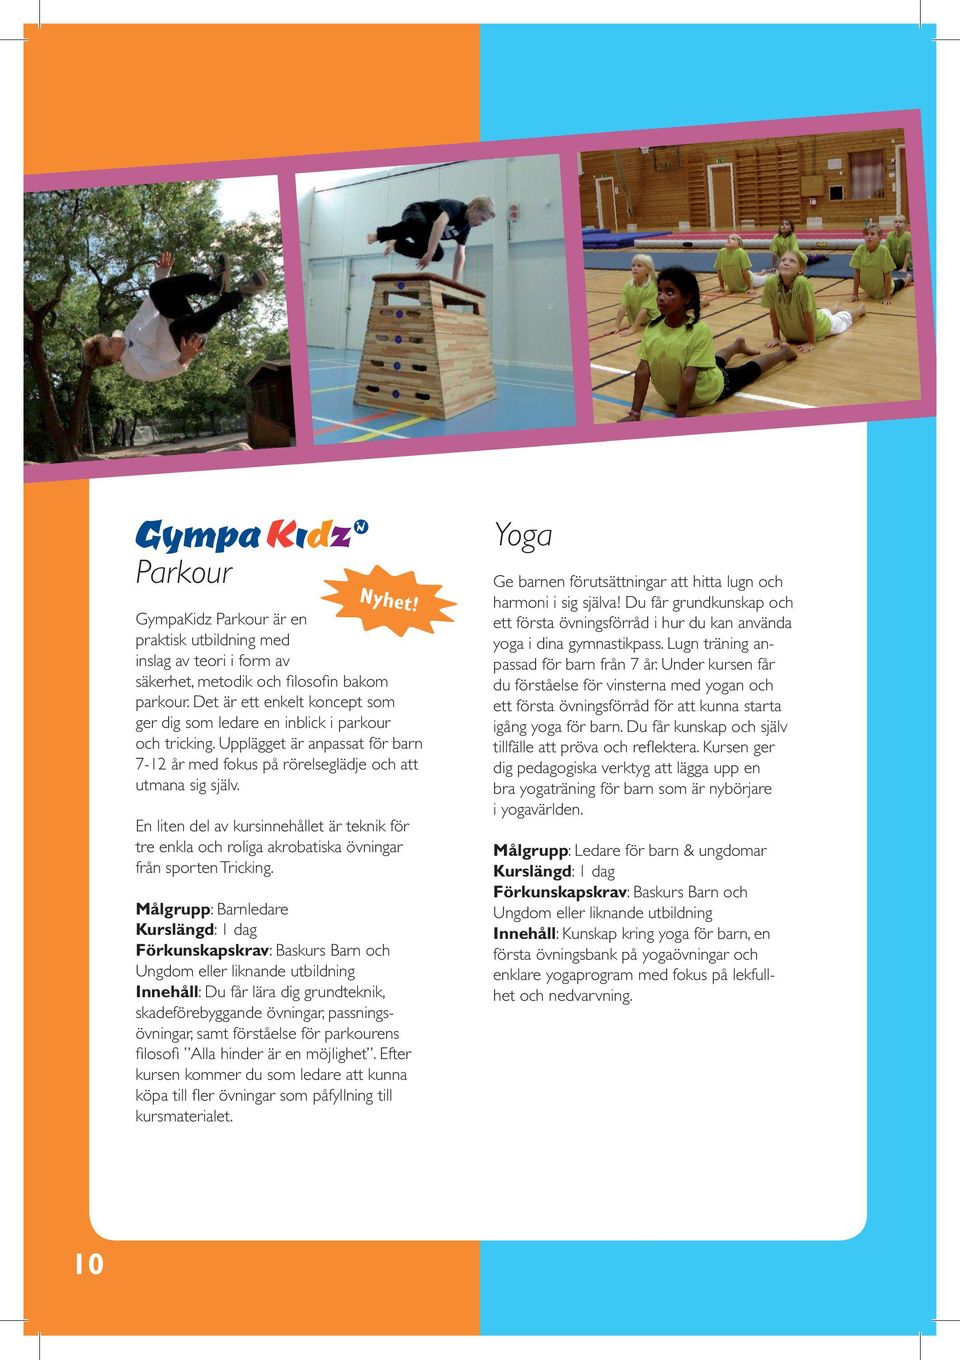 En liten del av kursinnehållet är teknik för tre enkla och roliga akrobatiska övningar från sporten Tricking.